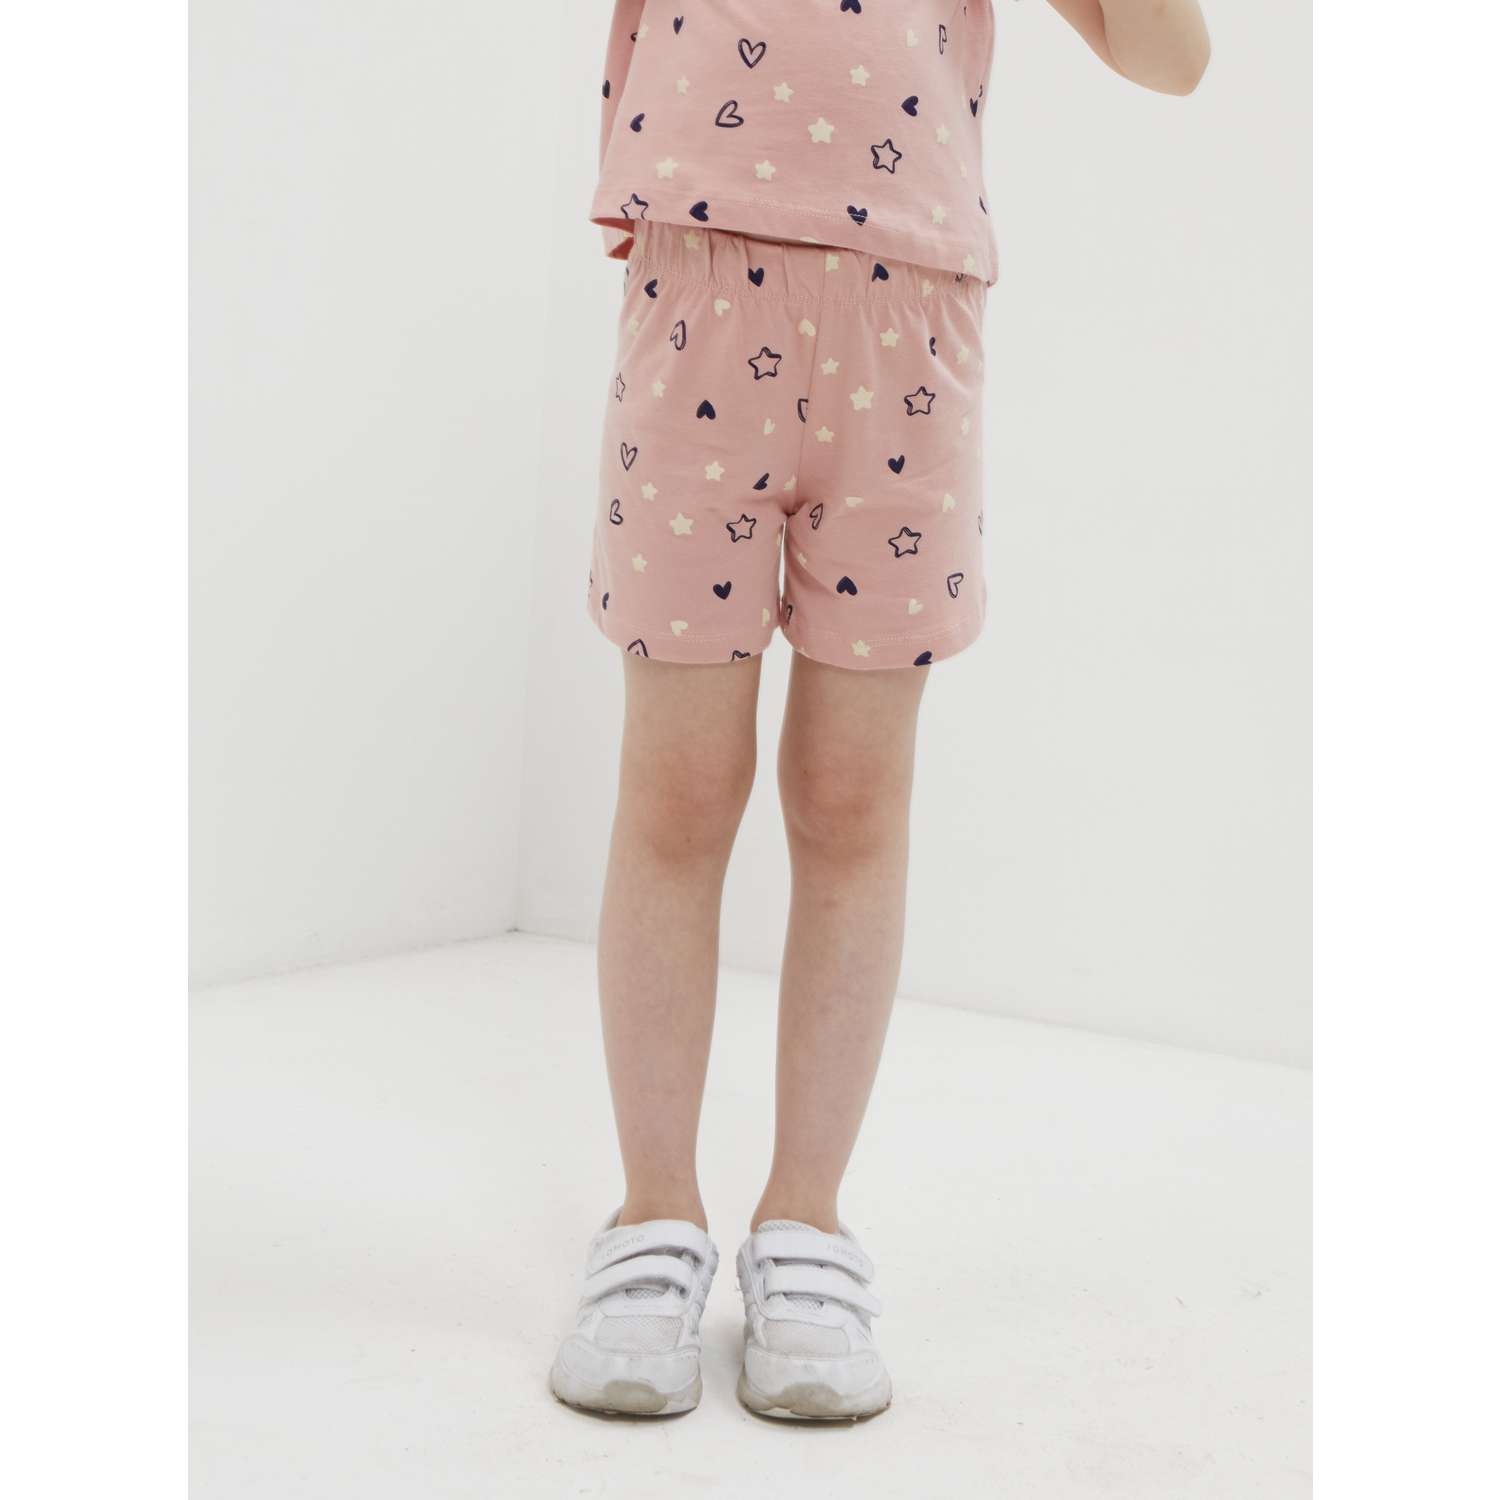 Пижама ISSHOP пижама с шортами розовая - фото 4